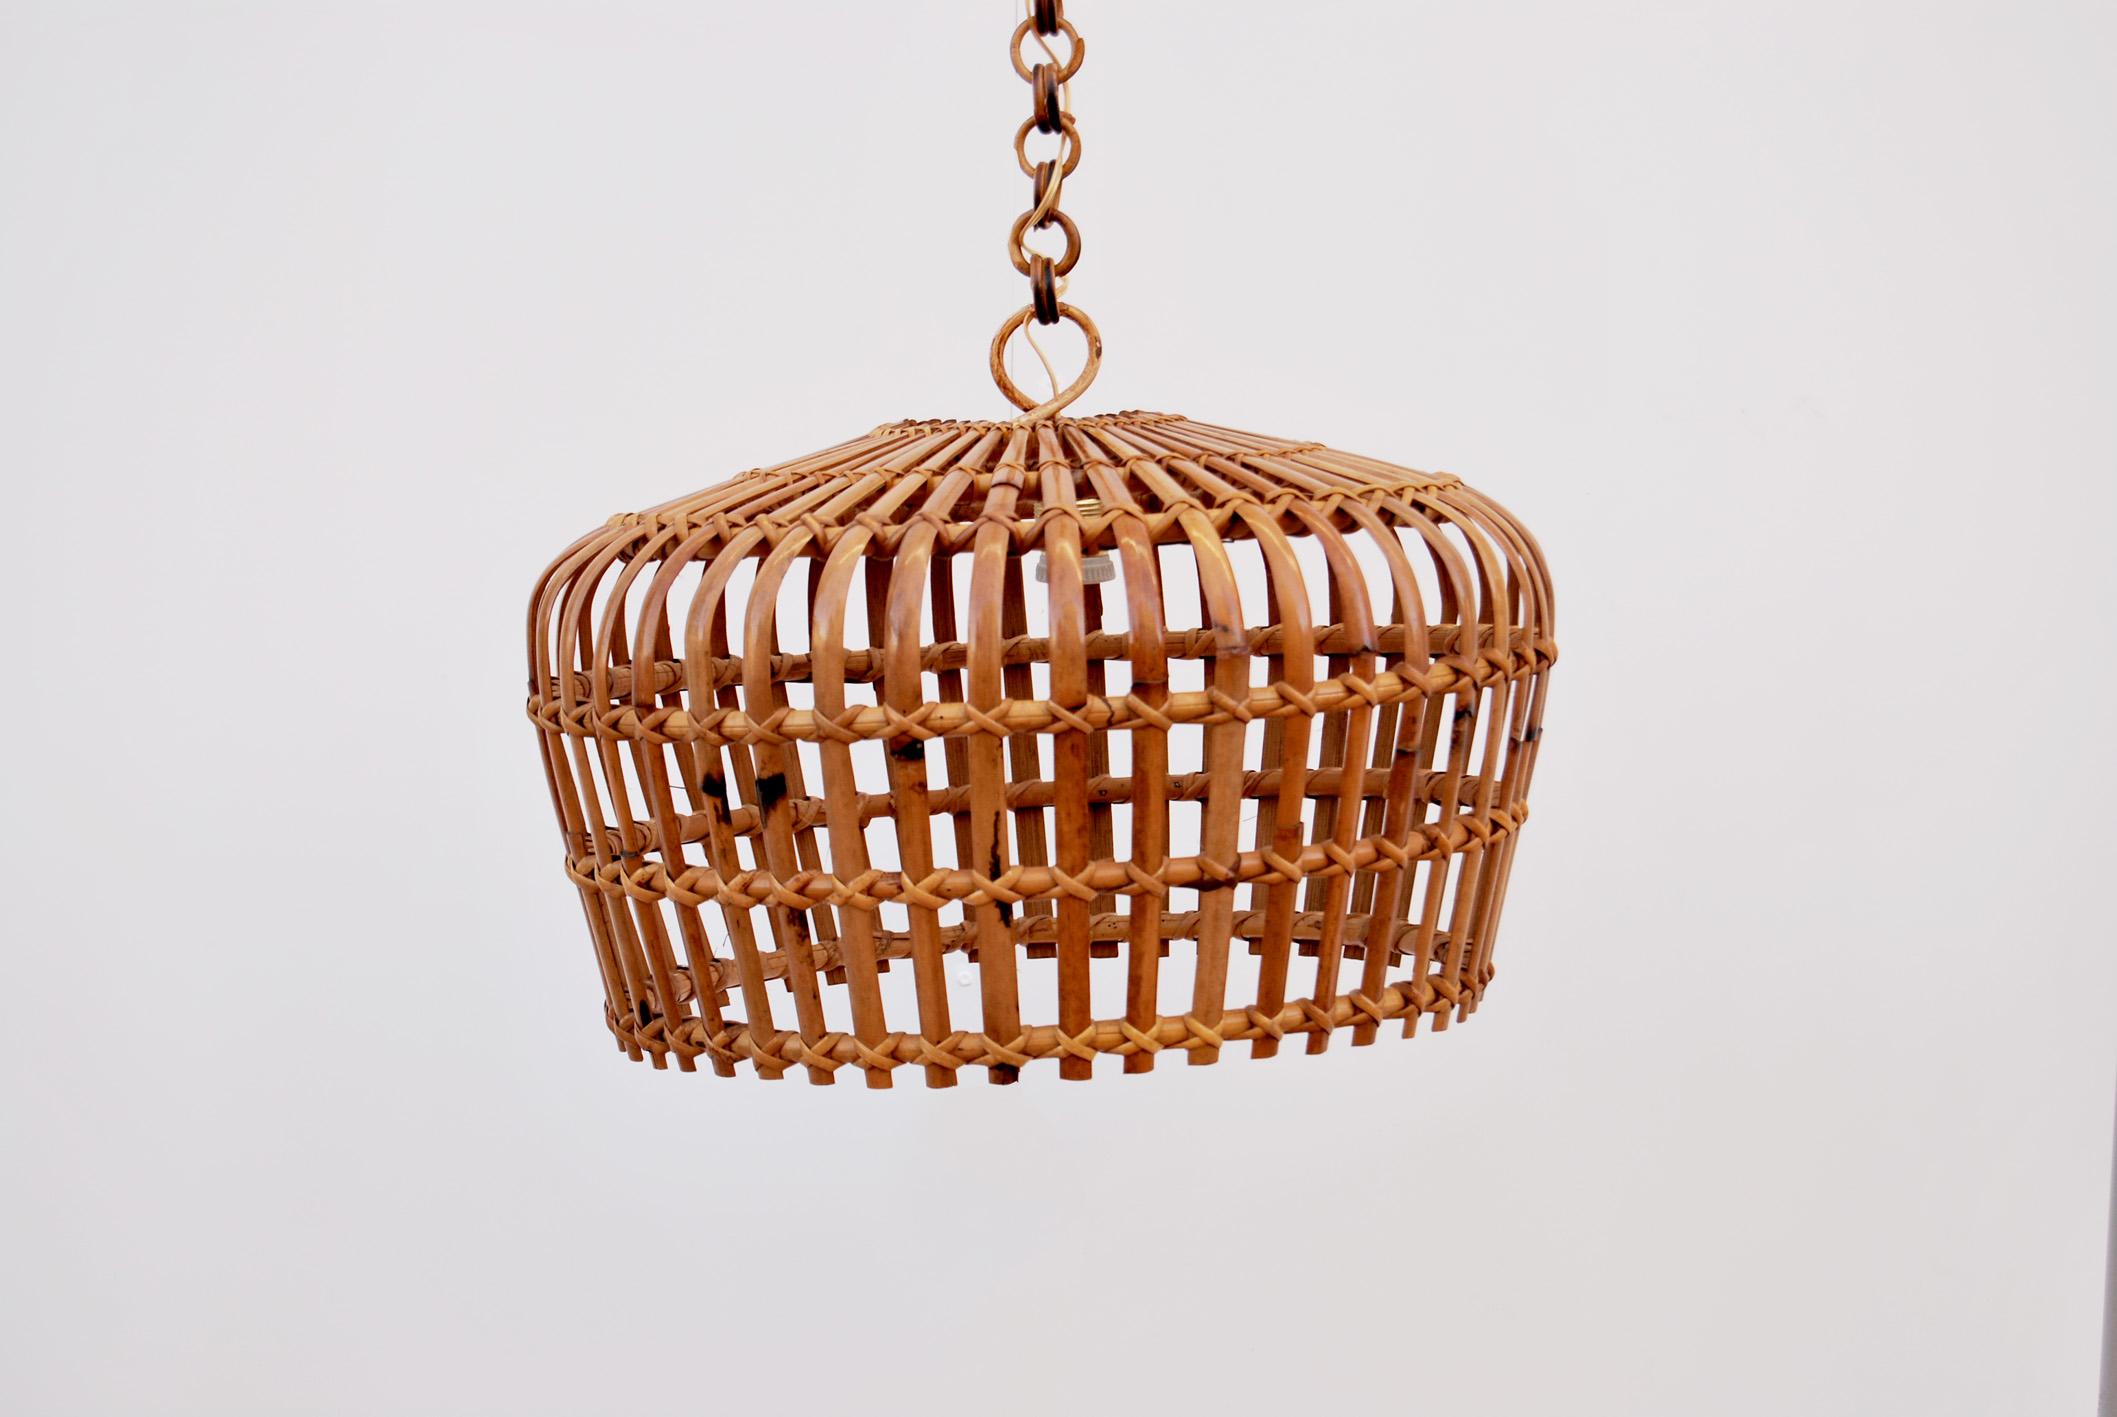 Magnifique lampe suspendue ronde en bambou et osier, années 1960, fabriquée en Italie. 
Le lustre se compose d'un abat-jour incurvé en rotin entièrement fabriqué à la main, et la chaîne est constituée de maillons ronds en rotin, qui peuvent être